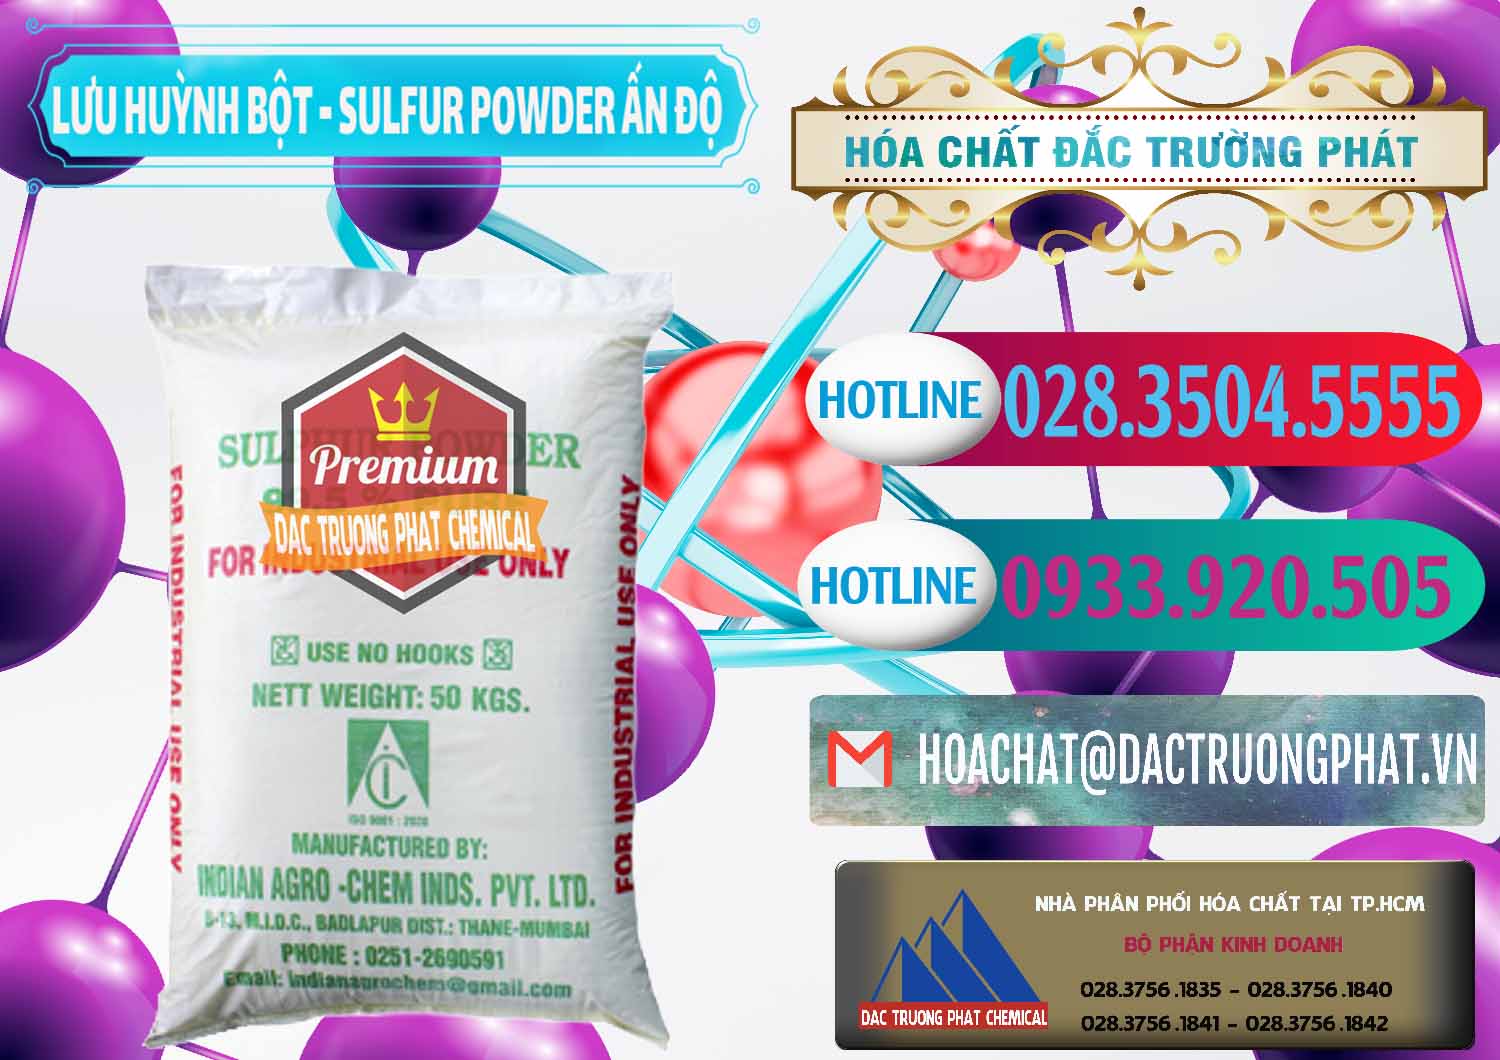 Chuyên bán - cung cấp Lưu huỳnh Bột - Sulfur Powder Ấn Độ India - 0347 - Nơi chuyên cung cấp _ nhập khẩu hóa chất tại TP.HCM - truongphat.vn